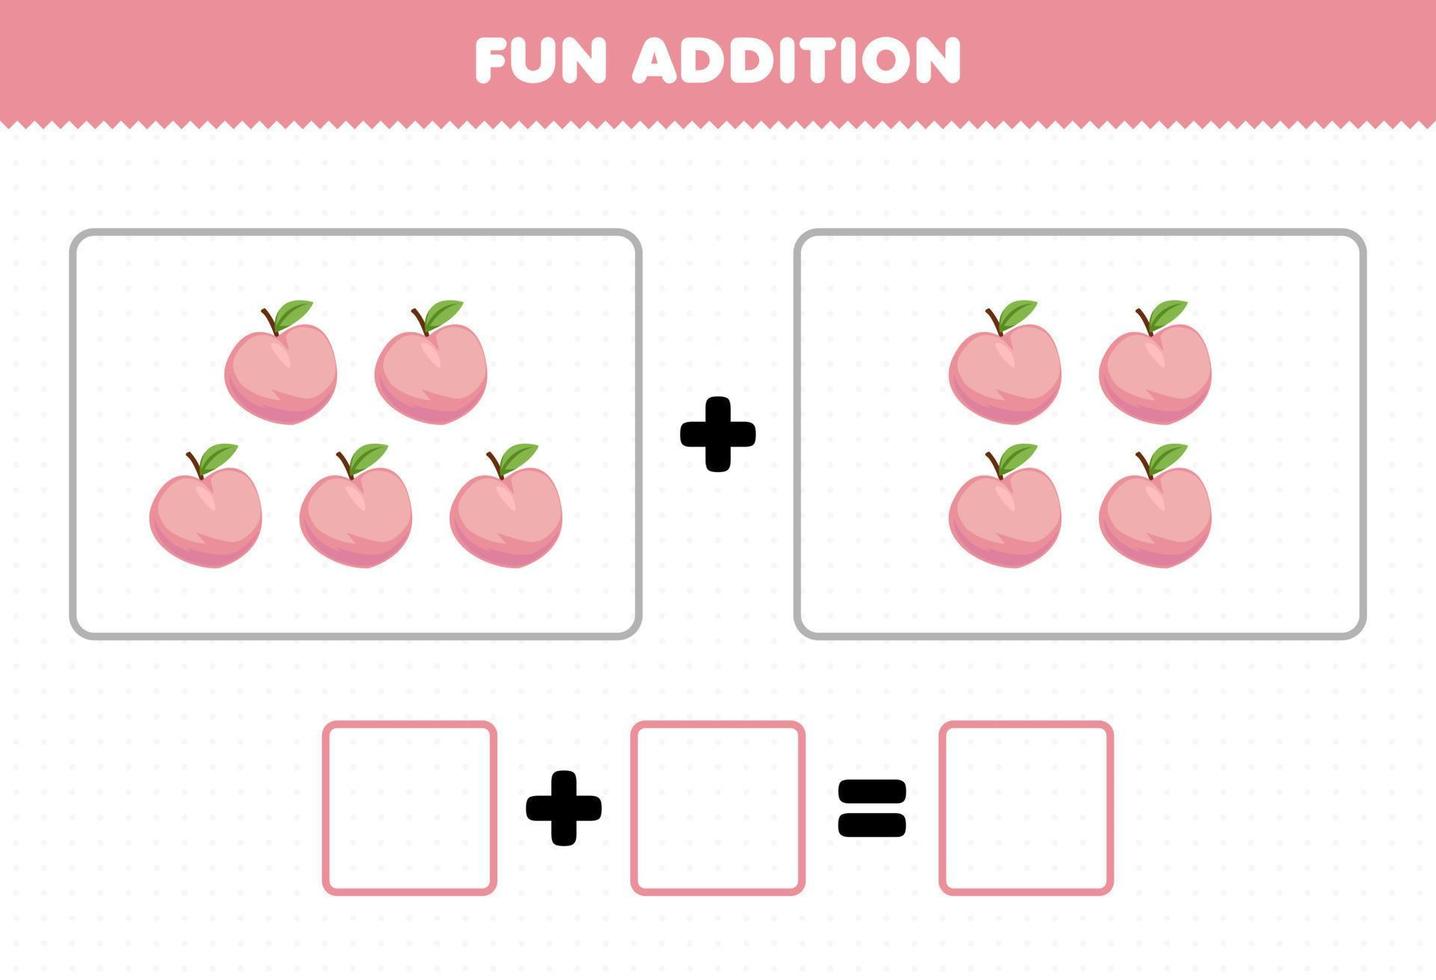 utbildning spel för barn roligt tillägg genom att räkna tecknade frukt persika bilder kalkylblad vektor